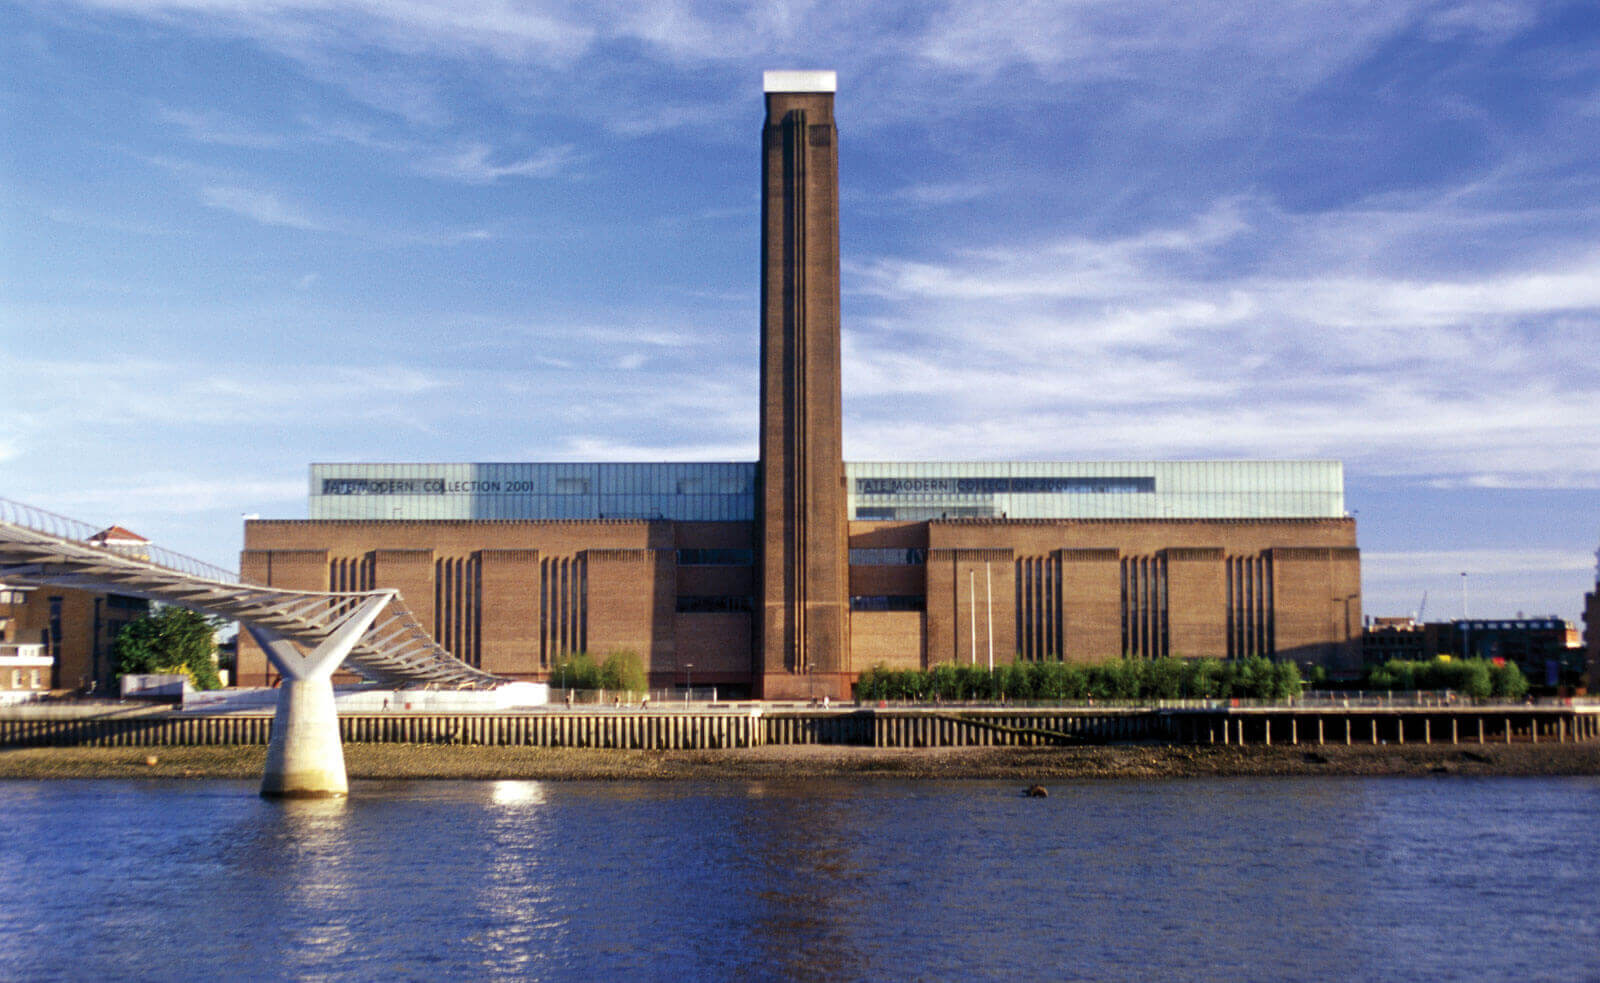 Tate Modern in London